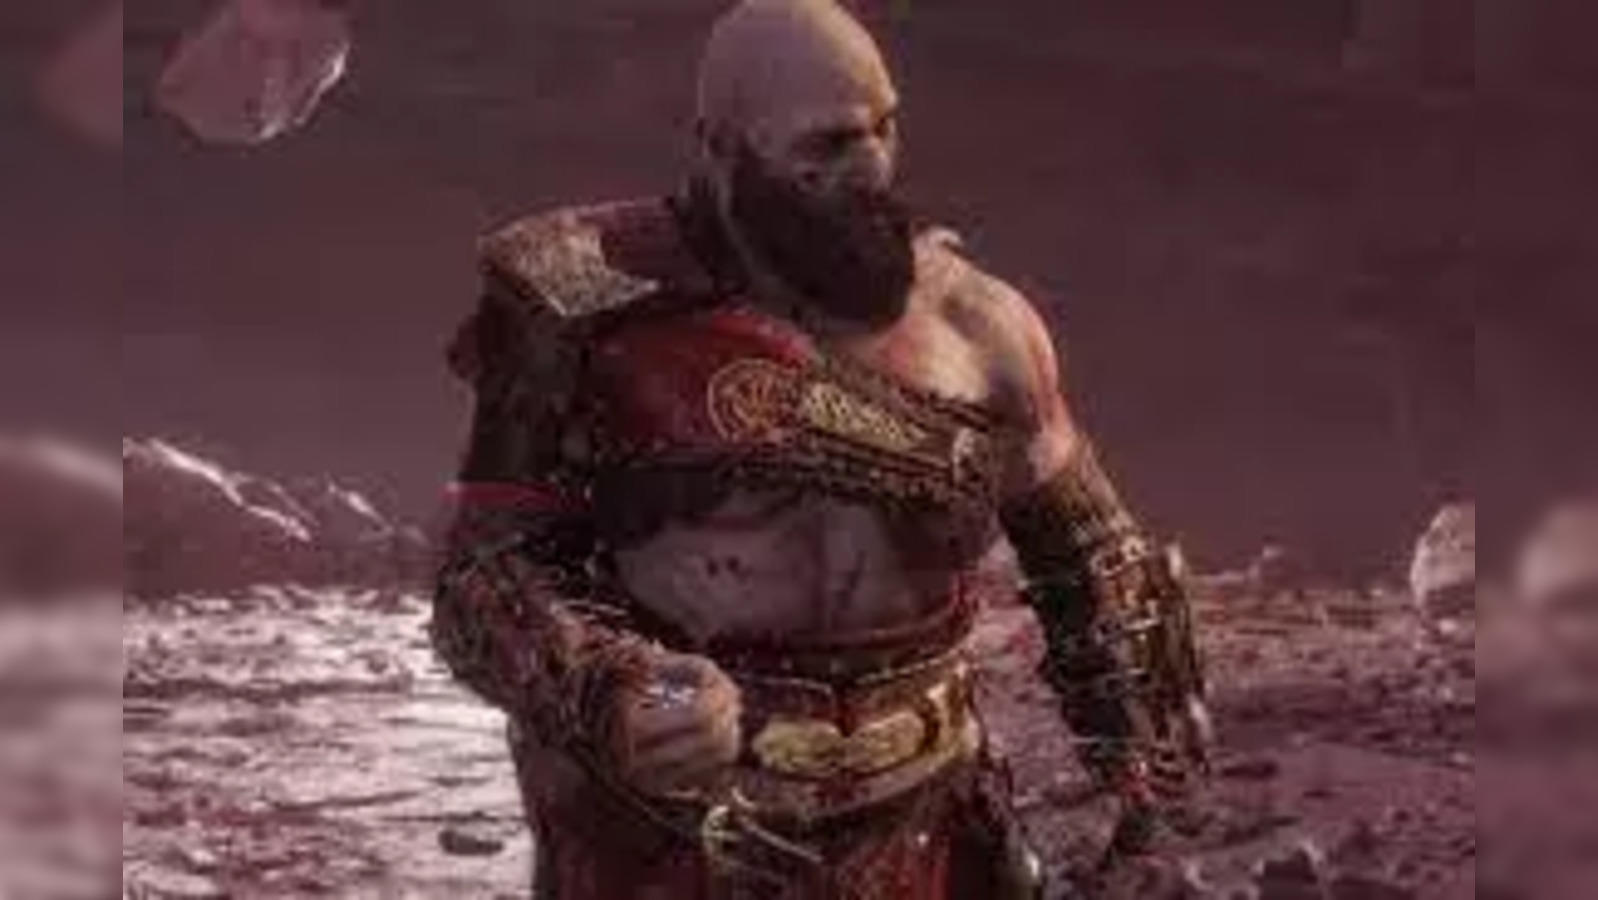 God of War Ragnarök writers considered killing Kratos in opening